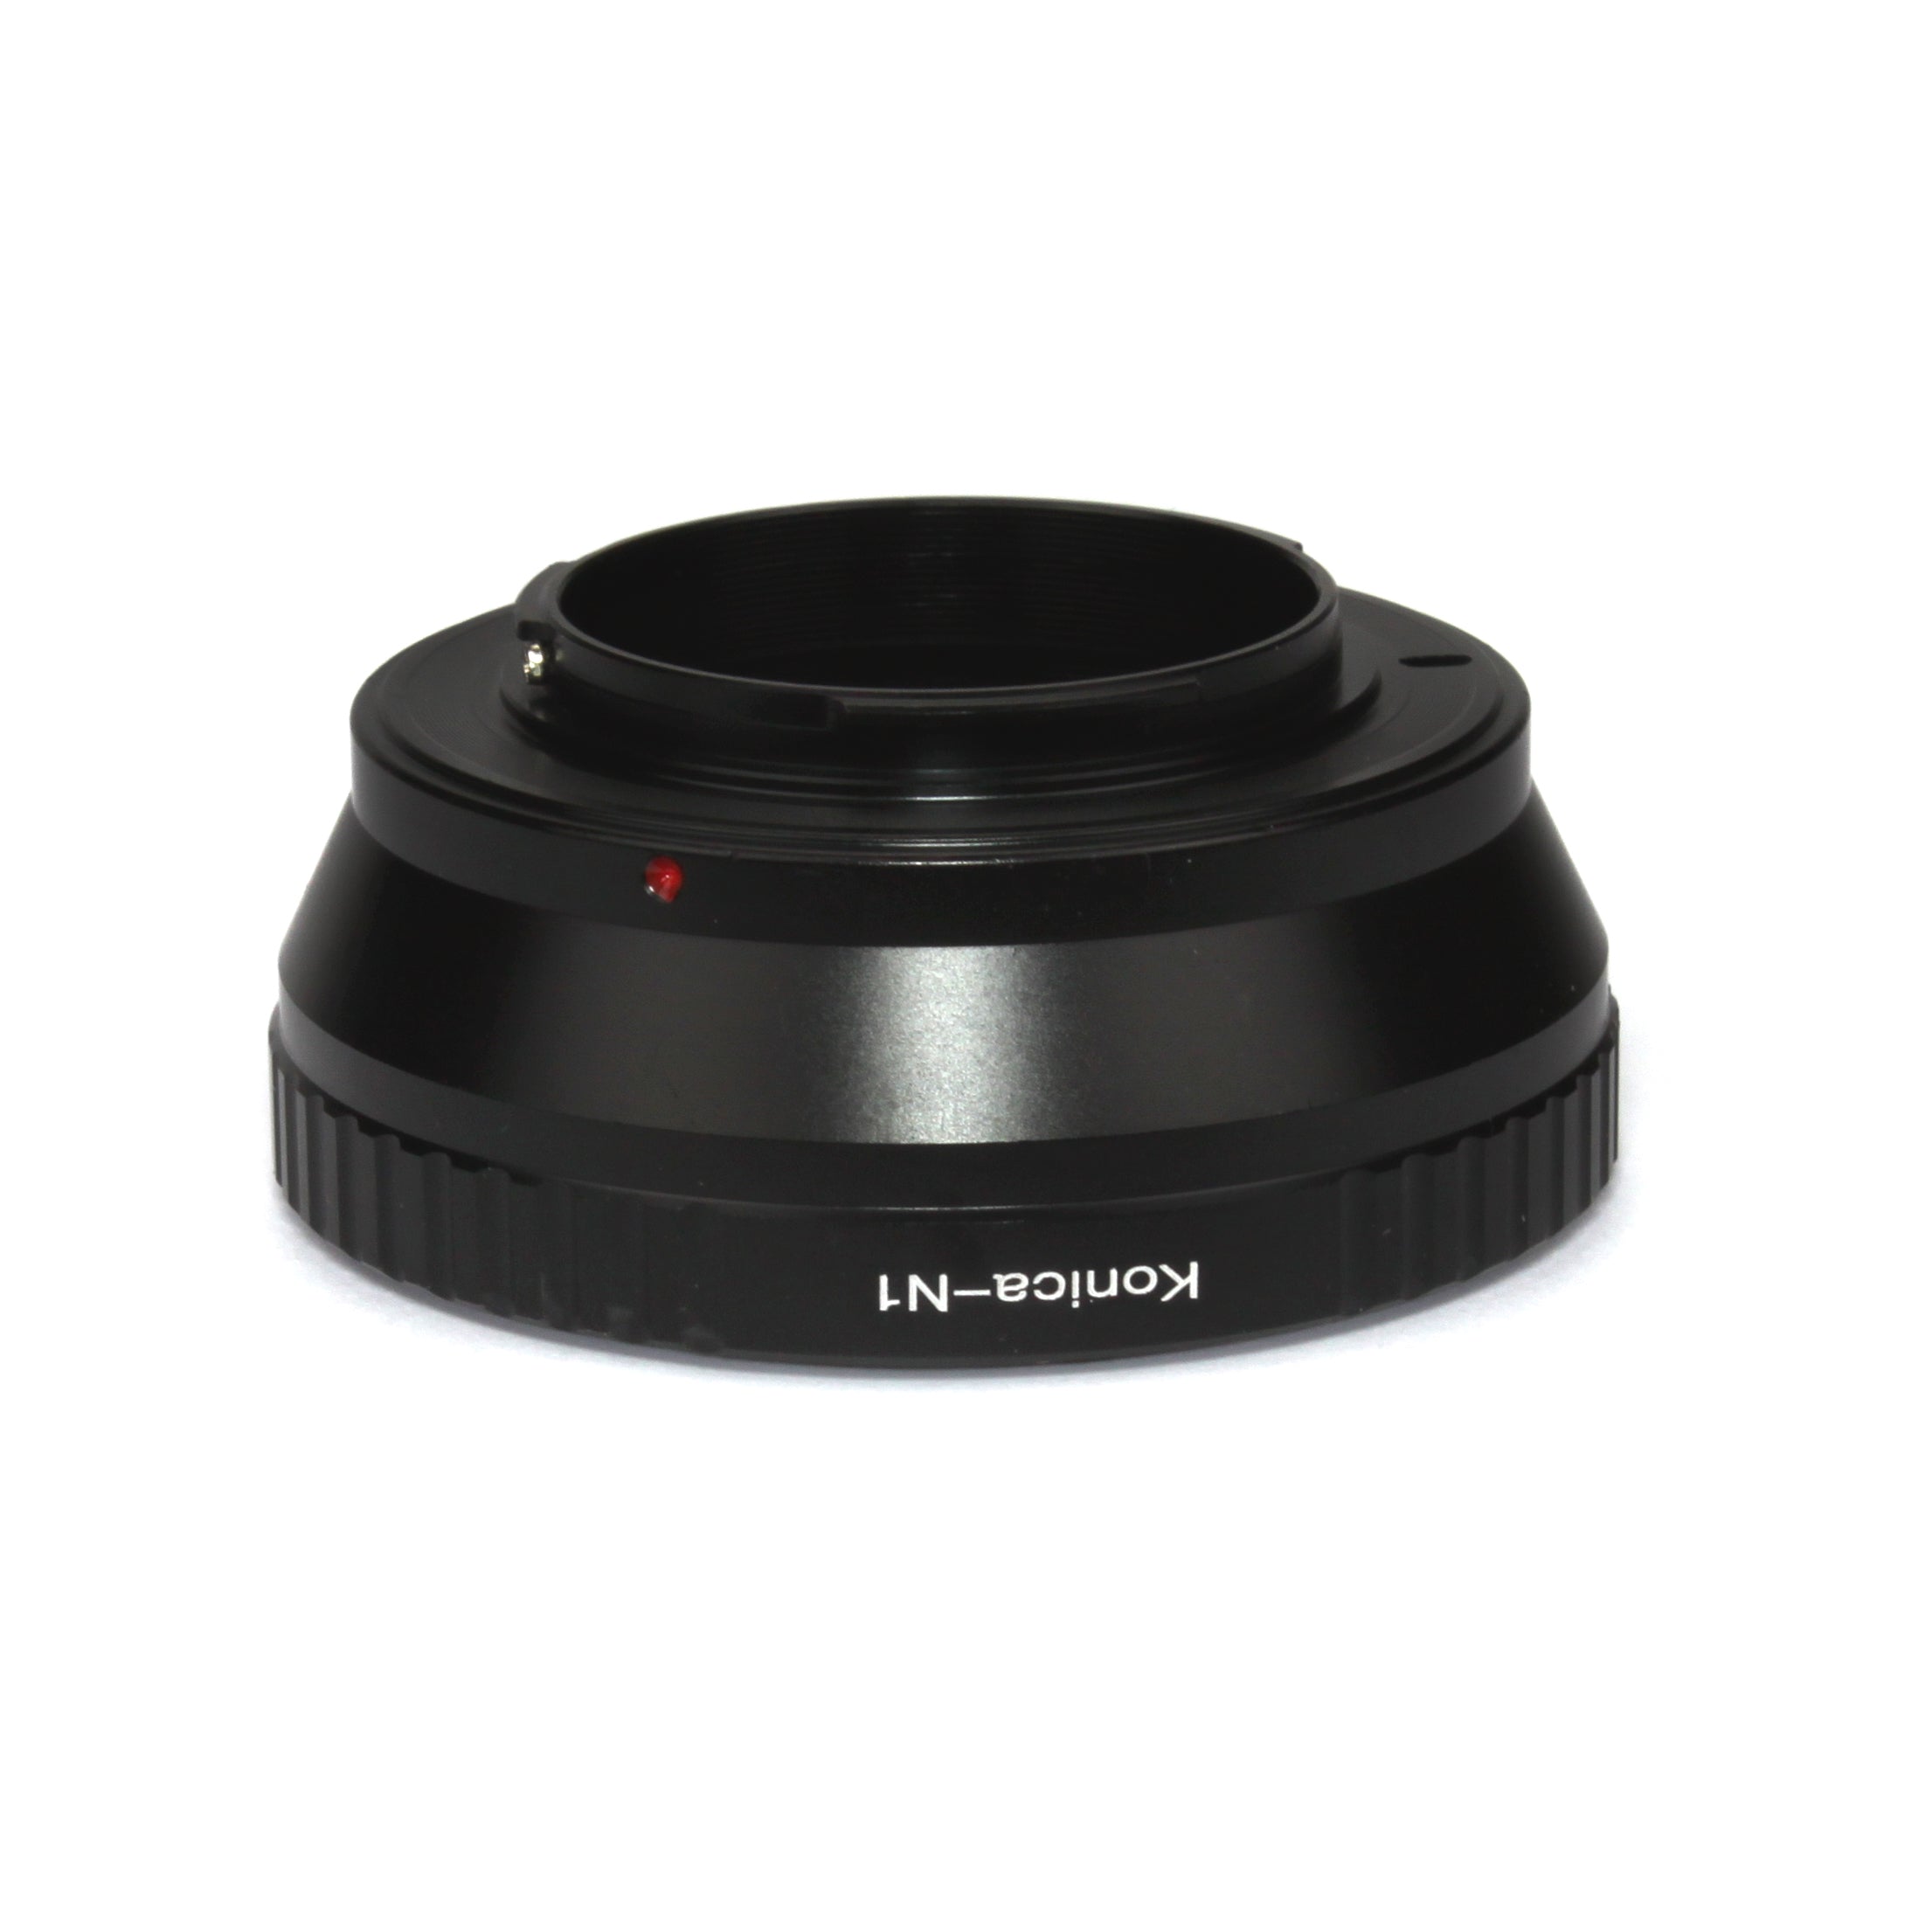 Konica AR mount lens to Nikon 1 mount adapter - J1 J2 V1 V2 V3 J3 J4 J5 S1